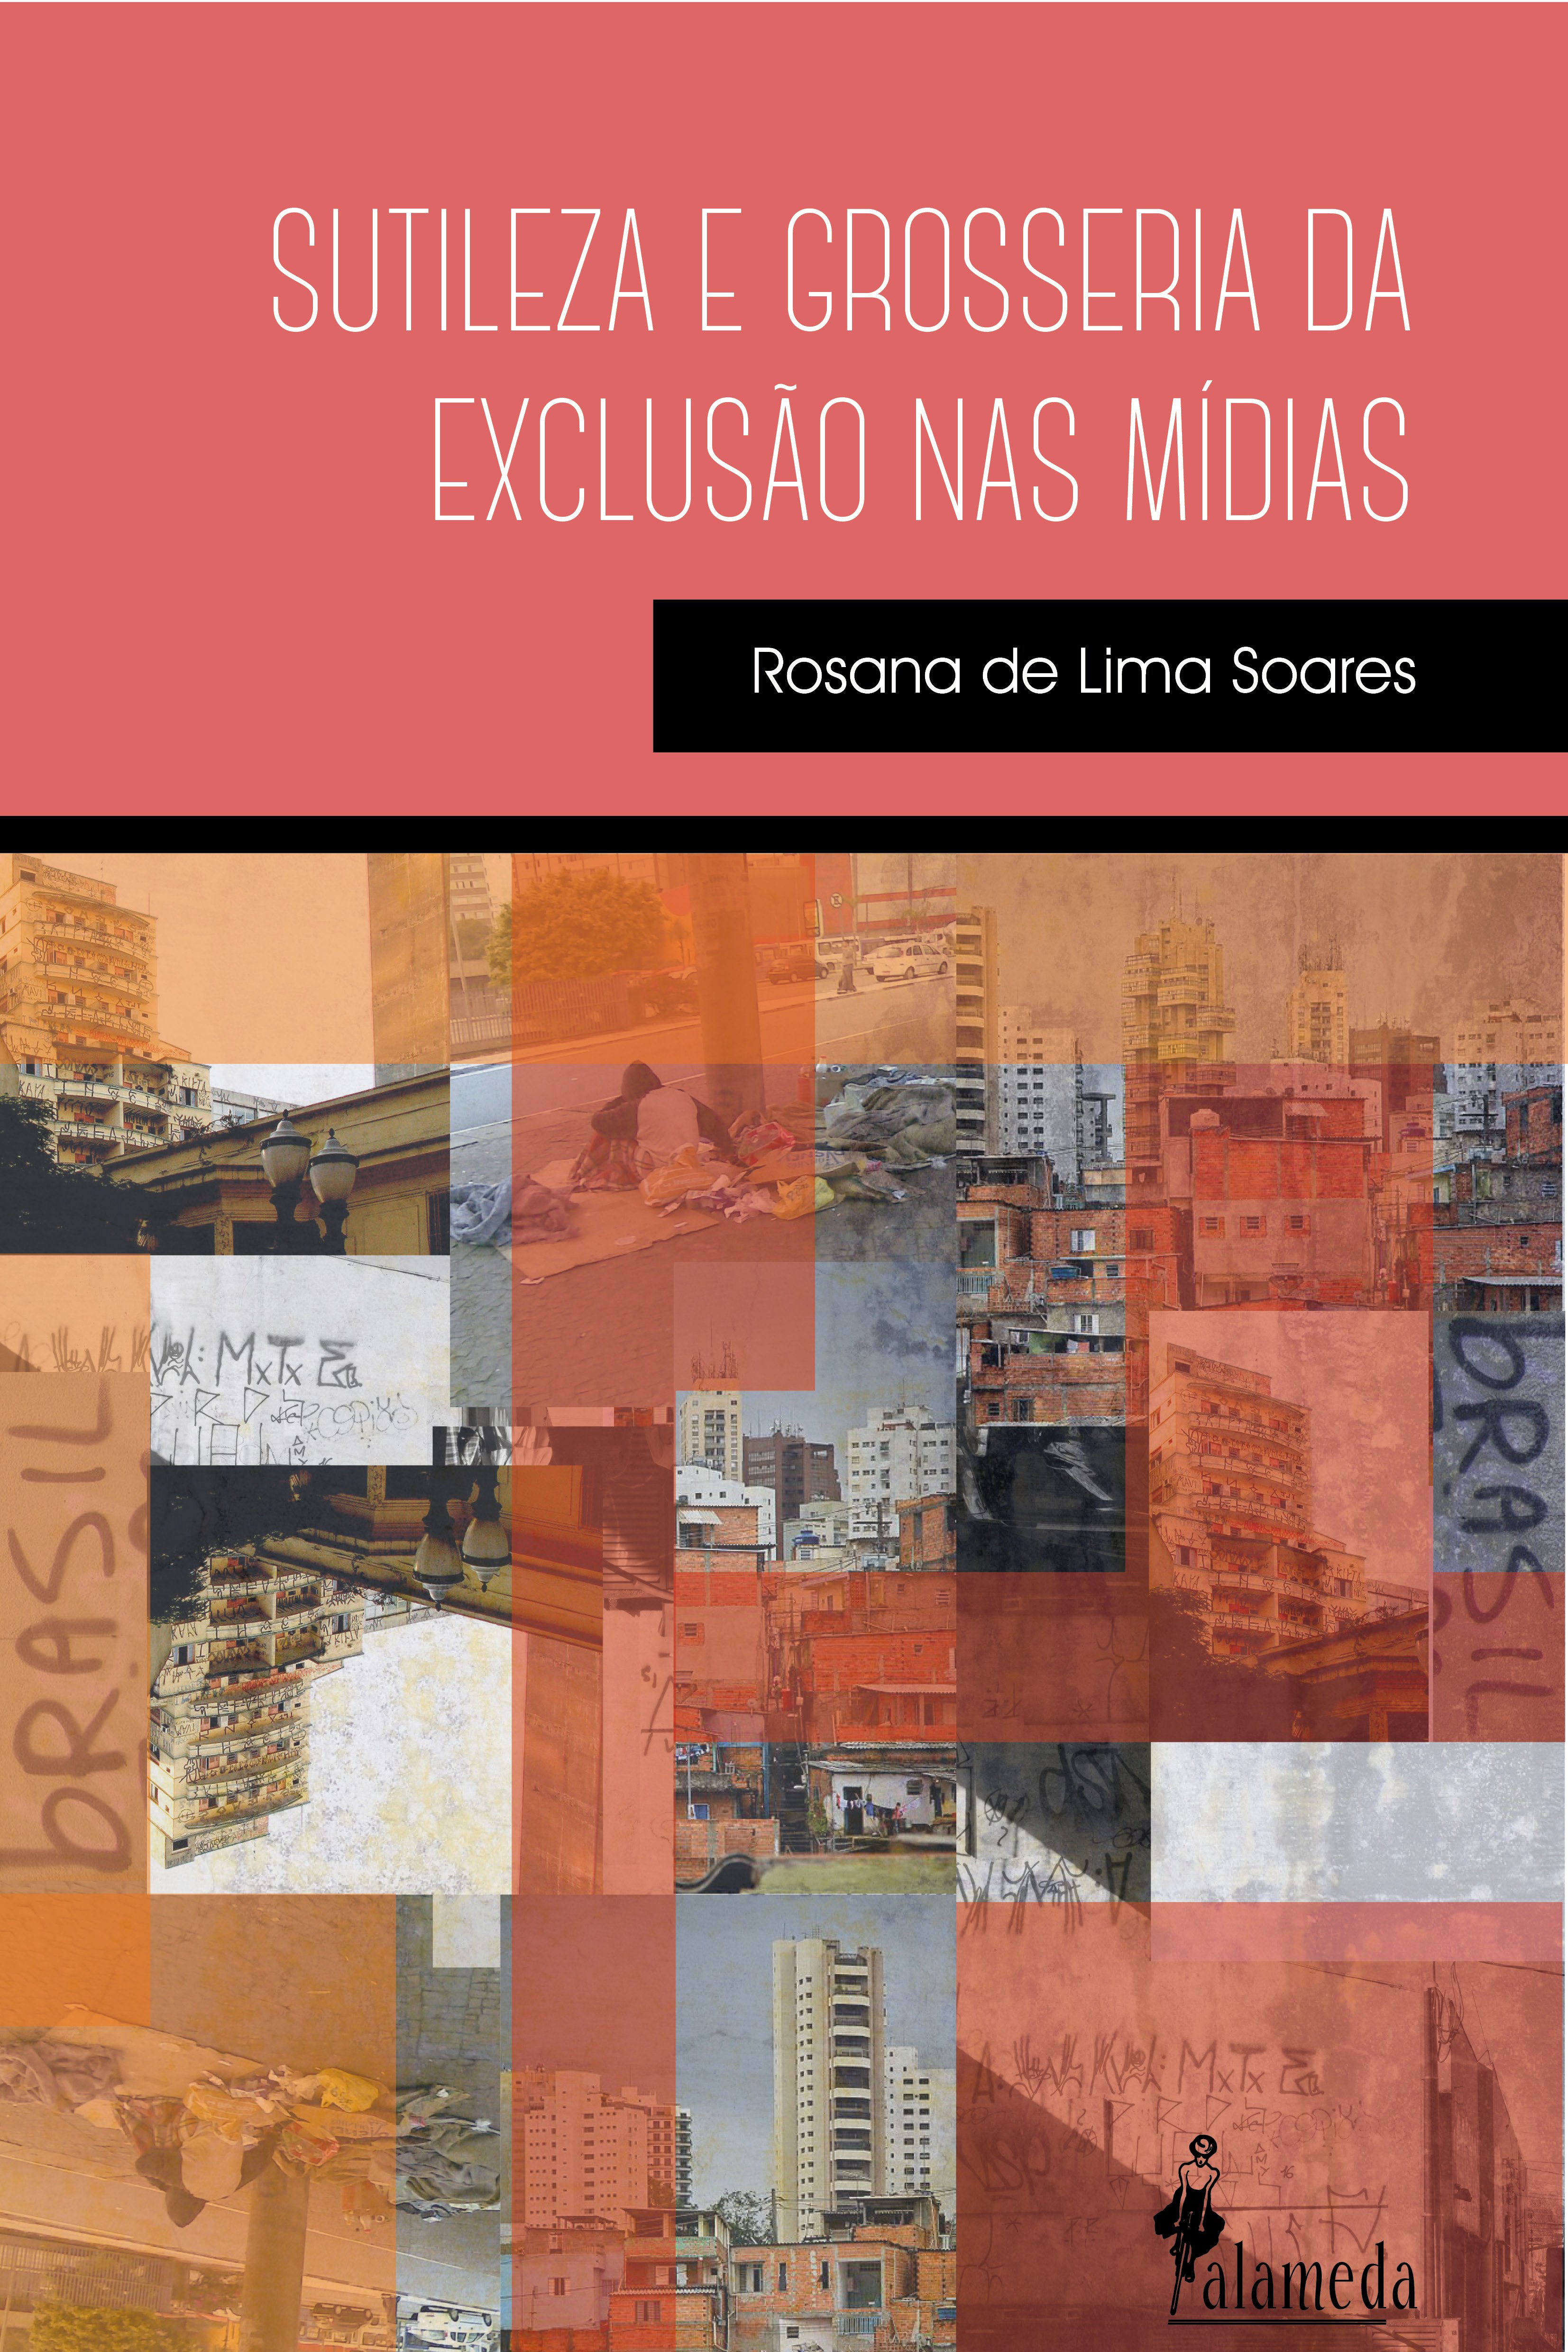 Sutileza e grosseria da exclusão nas mídias, livro de Rosana de Lima Soares